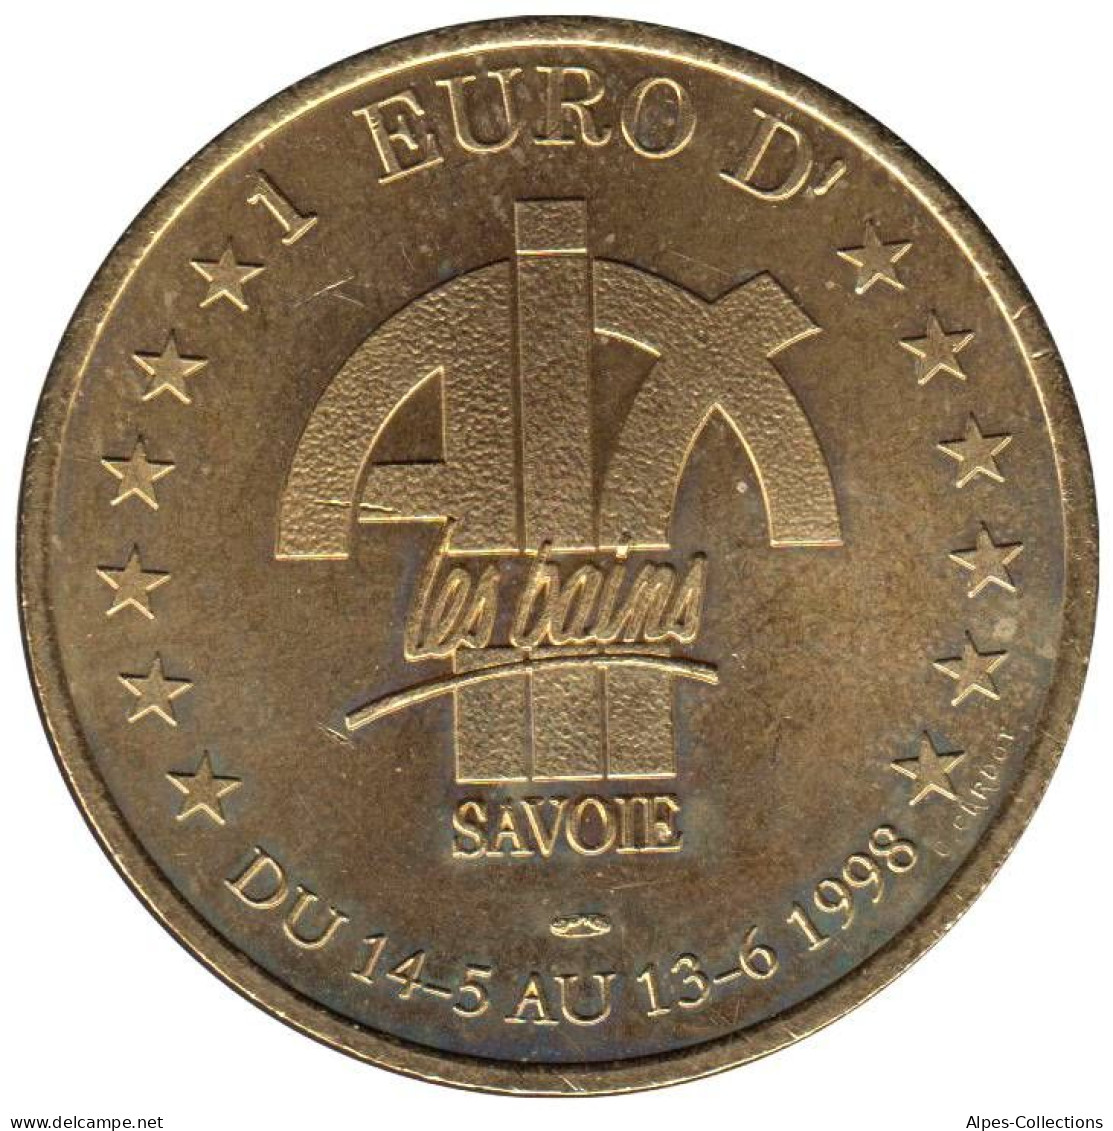 AIX LES BAINS - EU0010.4 - 1 EURO DES VILLES - Réf: T418 - 1998 - Euro Delle Città